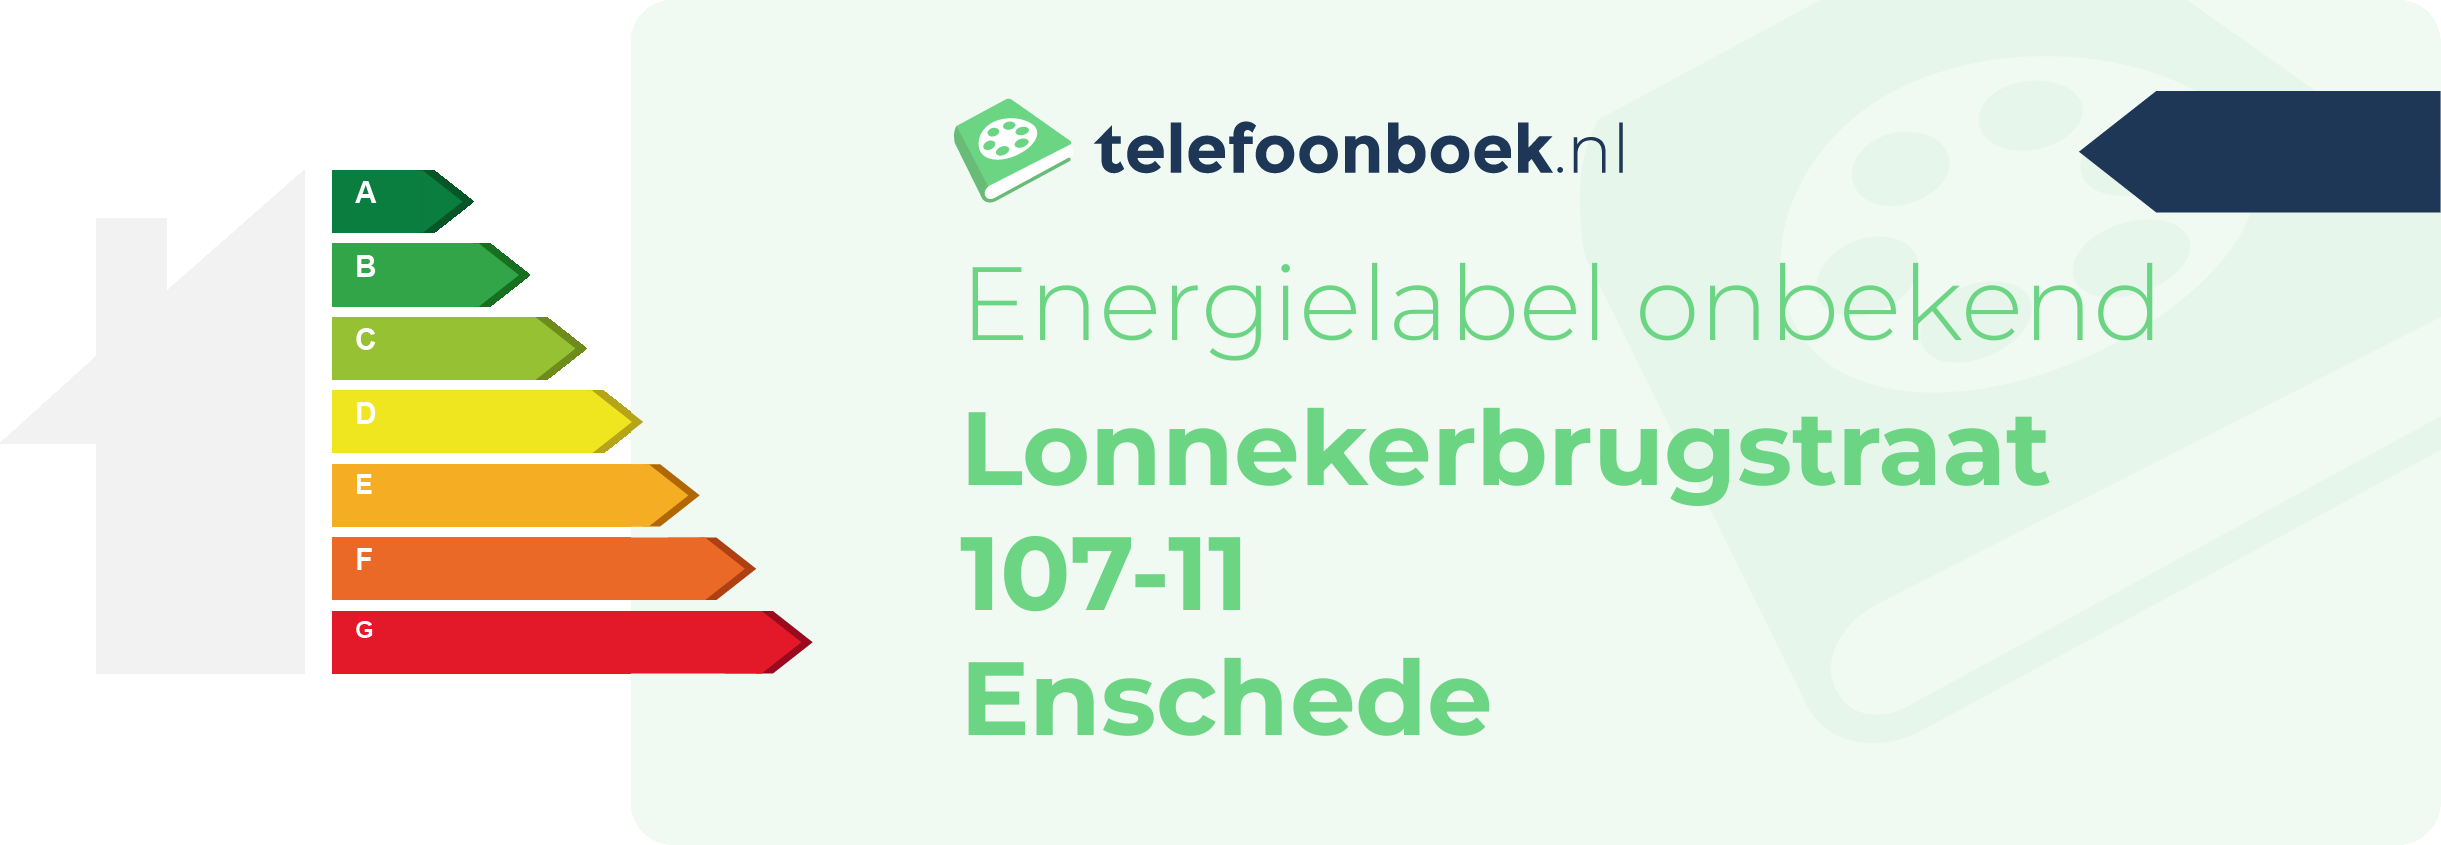 Energielabel Lonnekerbrugstraat 107-11 Enschede